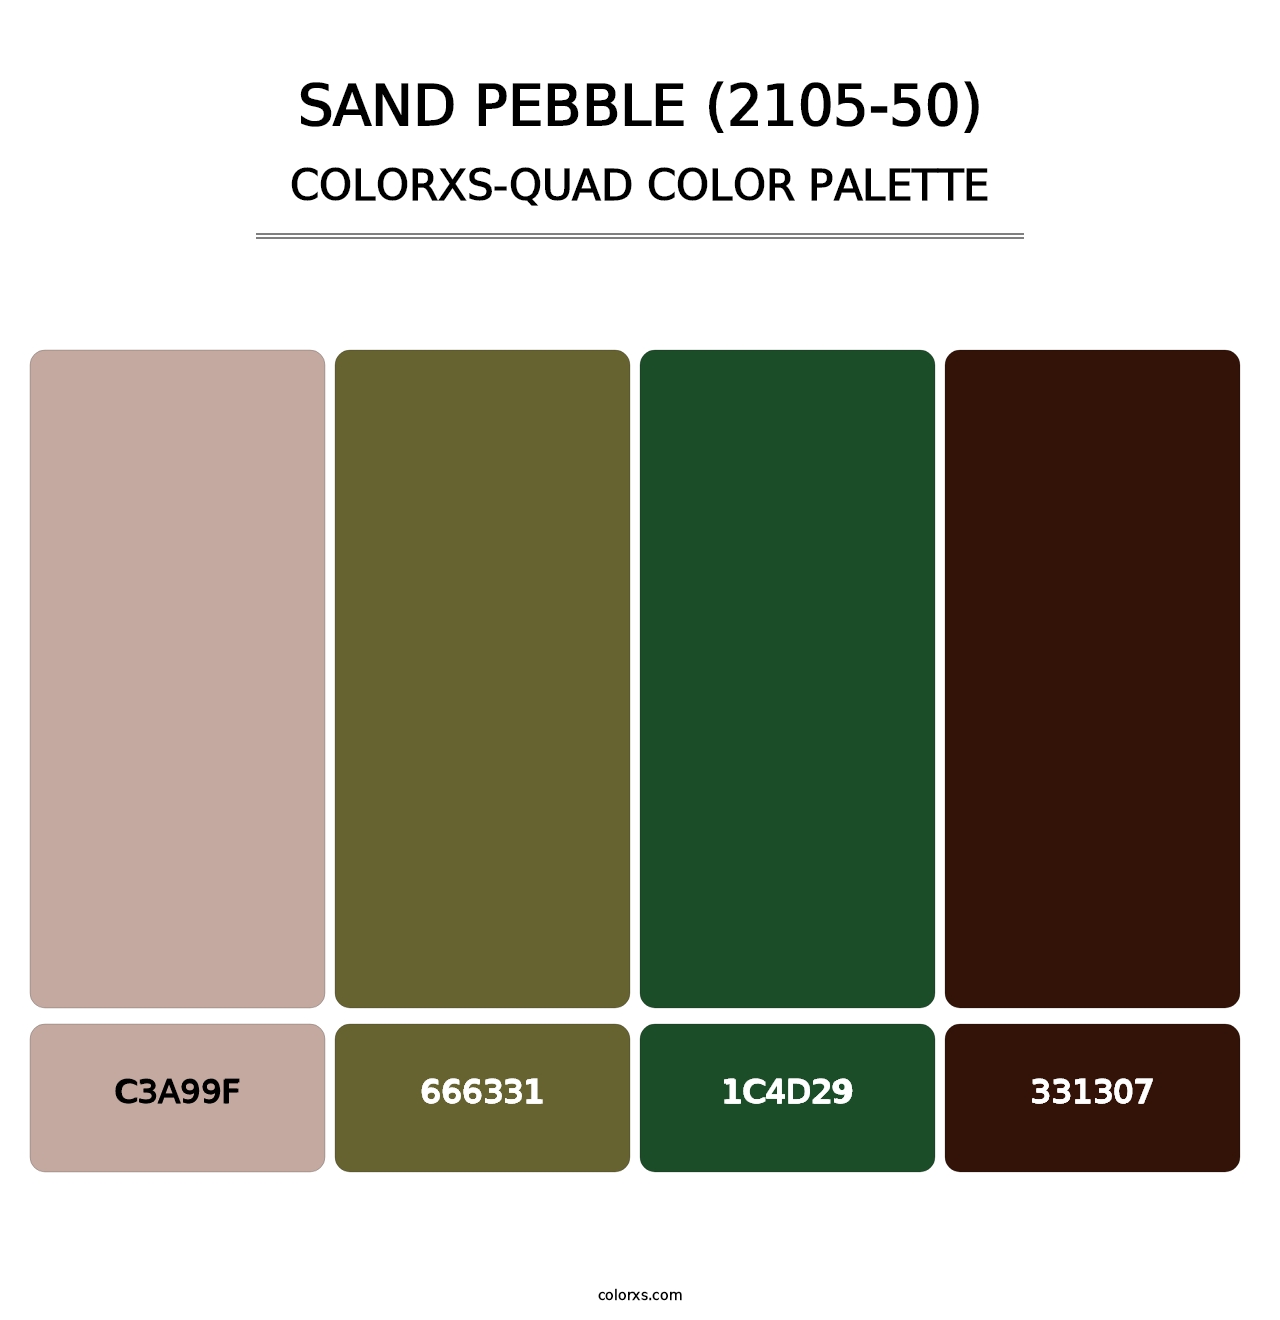 Sand Pebble (2105-50) - Colorxs Quad Palette